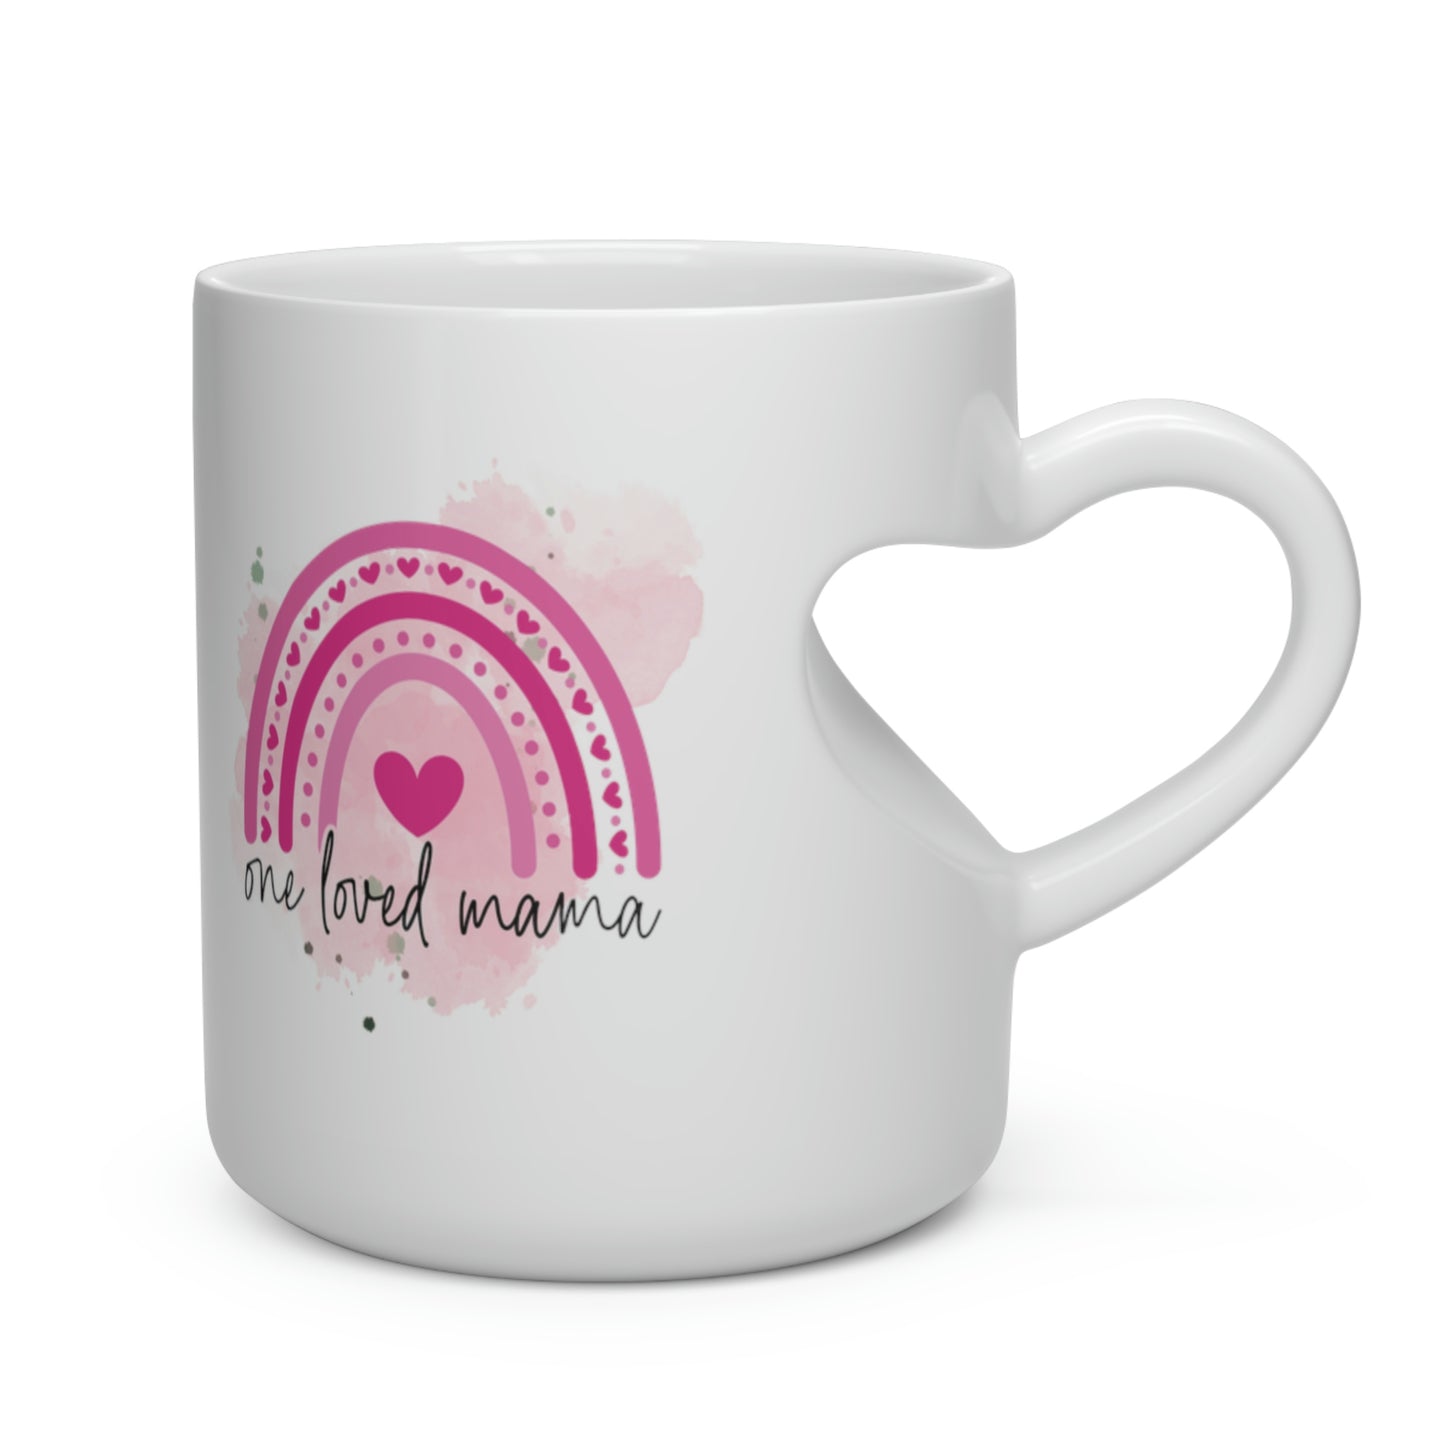 One Loved Mama Heart Shape Mug